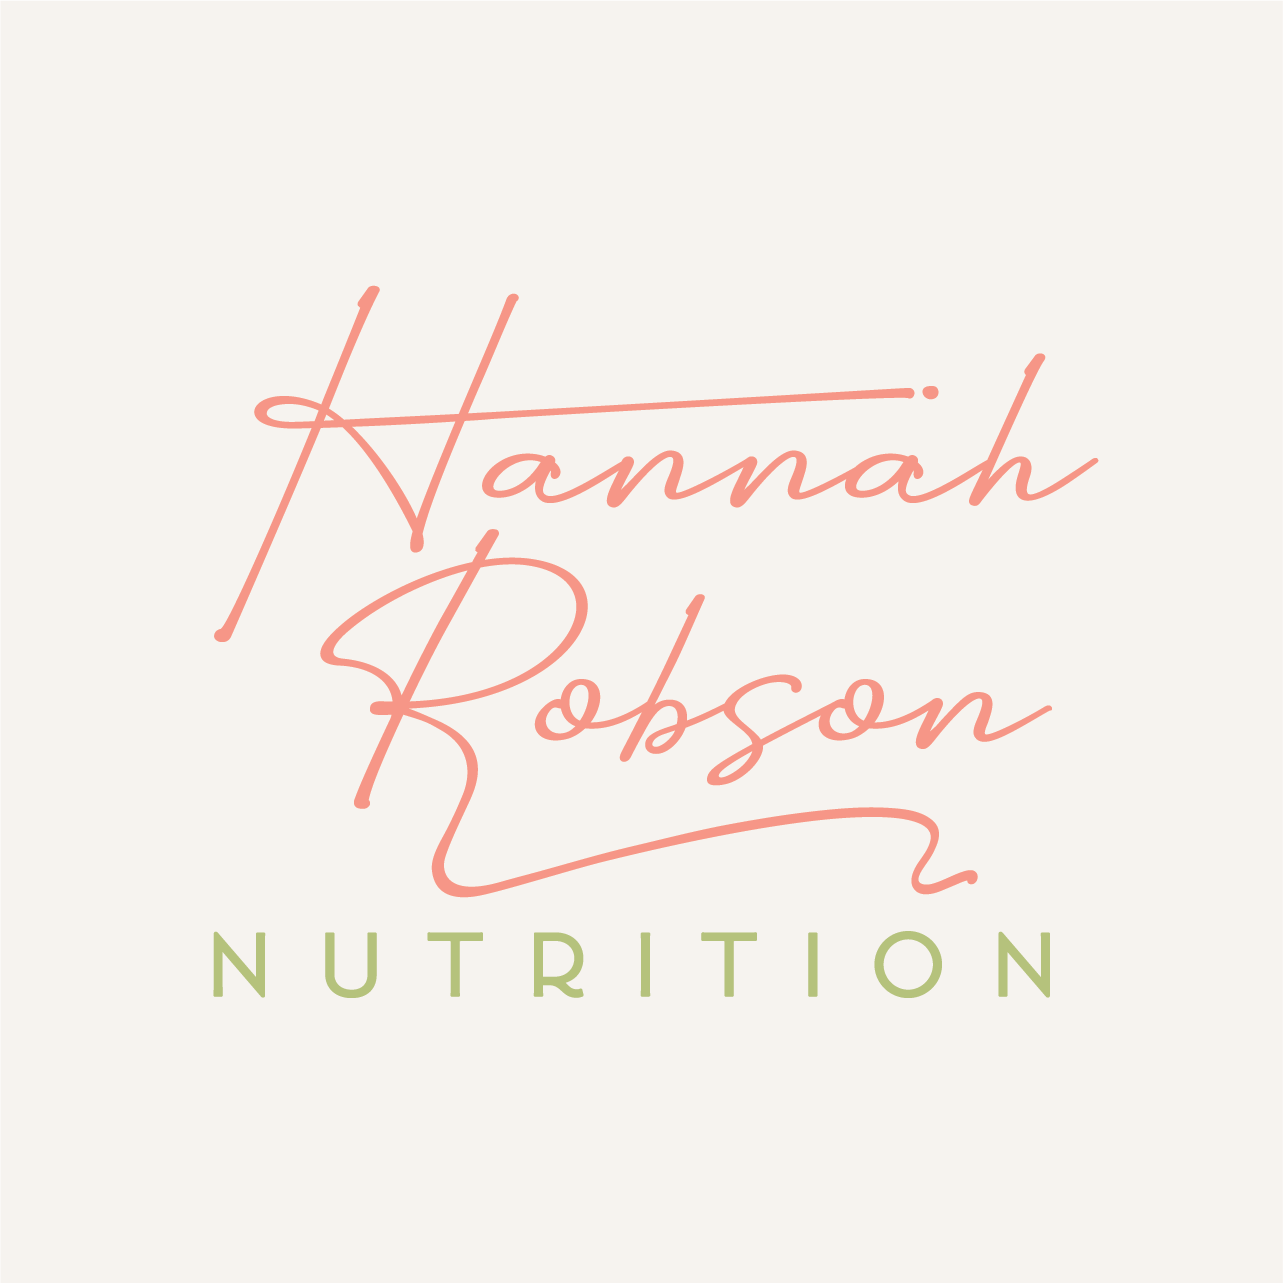 Hannah Robson Nutrition